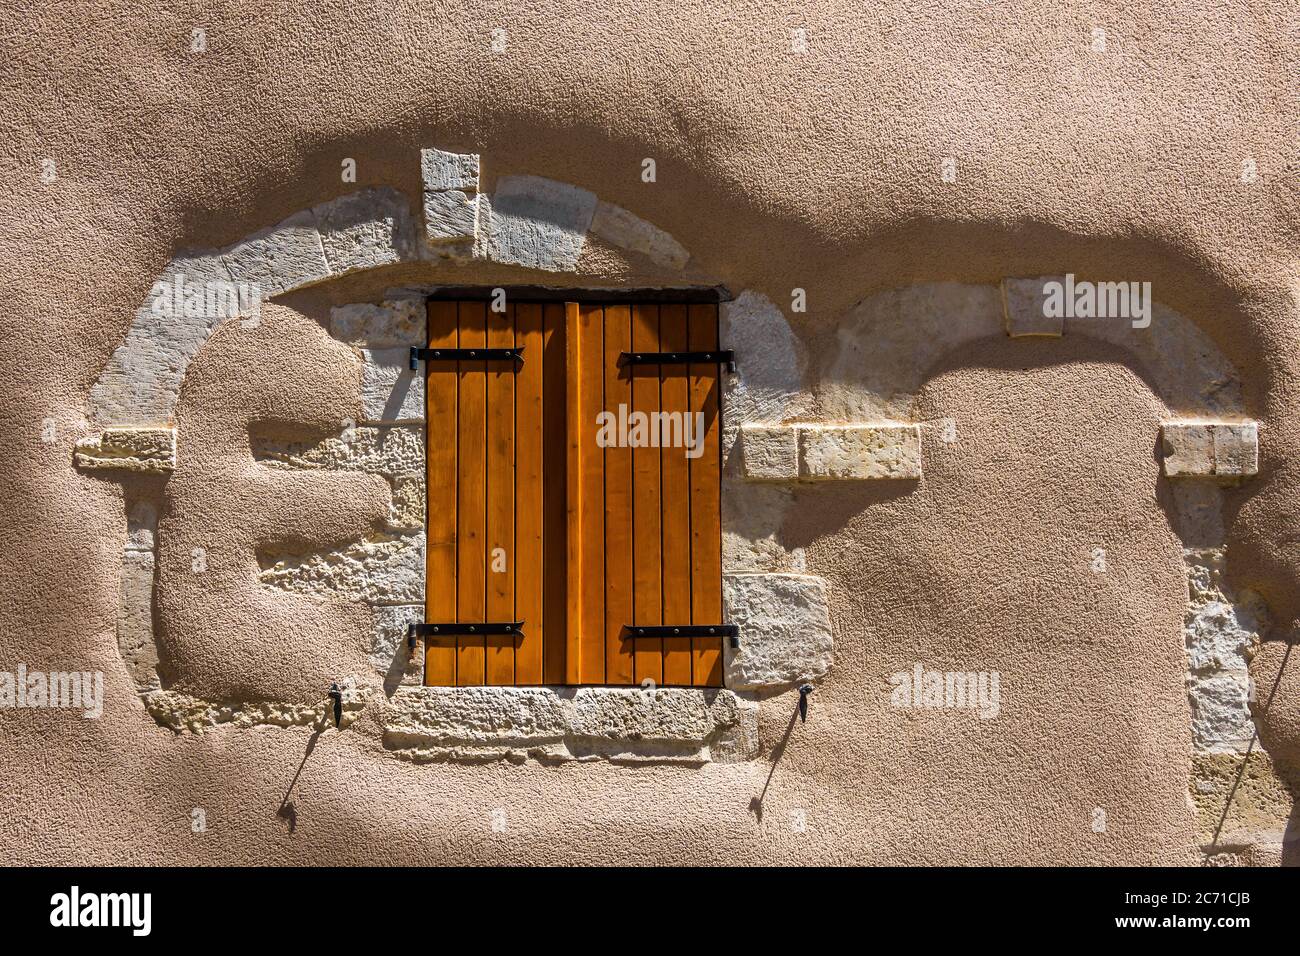 Volets modernes dans la vieille maison rénovée mur remplaçant les anciennes fenêtres et porte - Belabre, Indre, France. Banque D'Images